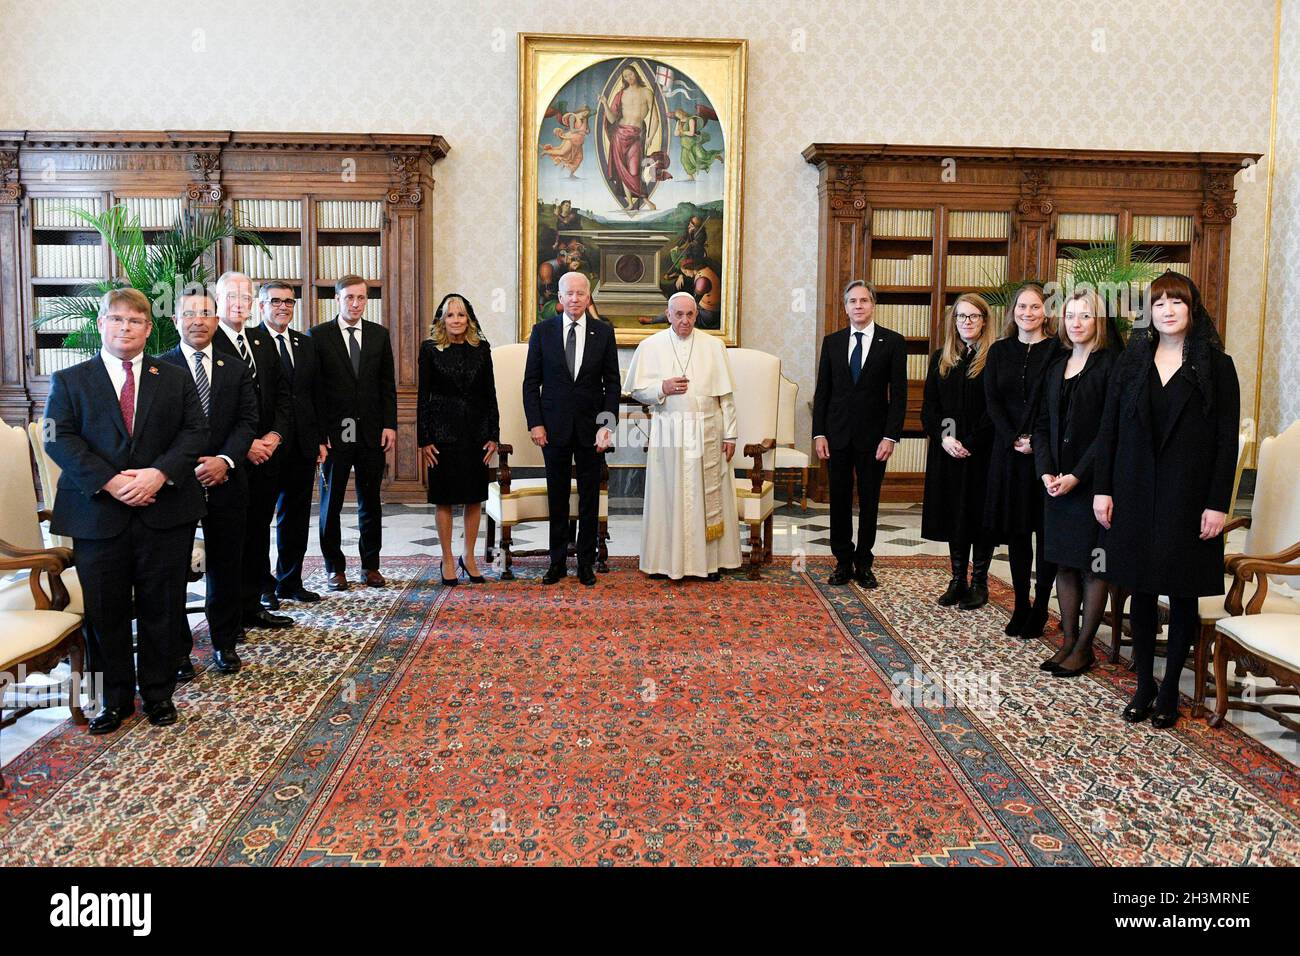 Le pape François rencontre le président des États-Unis d'Amérique Joe Biden lors d'une audience privée au Vatican, le 29 octobre 2021 à Rome, Italie.PHOTO À USAGE ÉDITORIAL EXCLUSIF !!! Banque D'Images